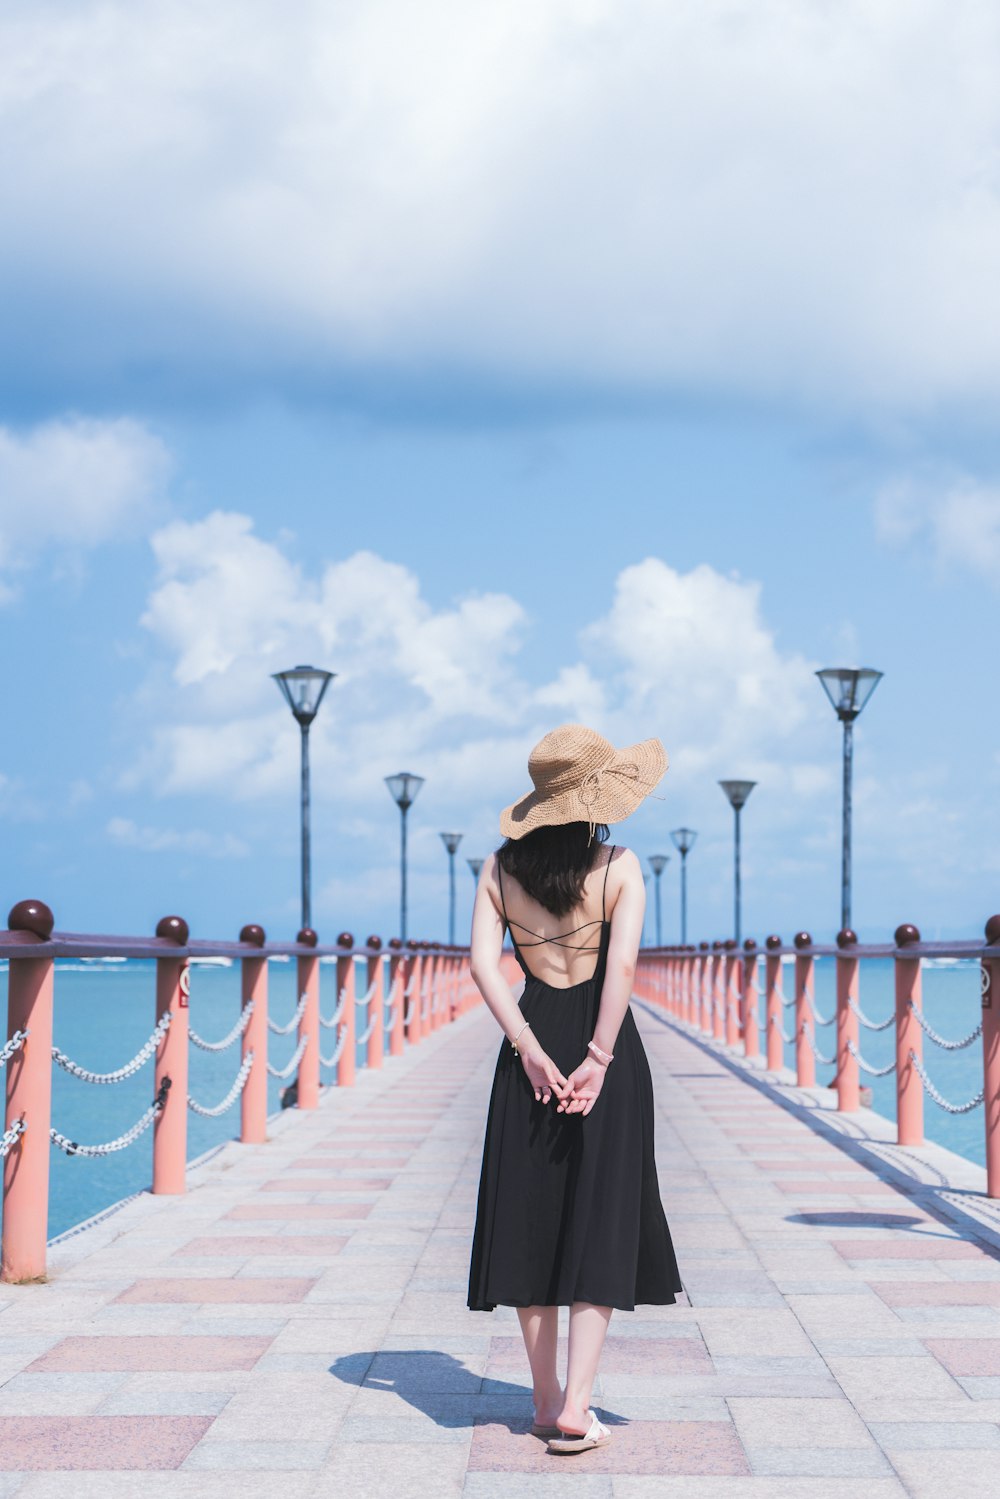 Femme en robe noire portant un chapeau de soleil marron debout sur le quai en bois pendant la journée